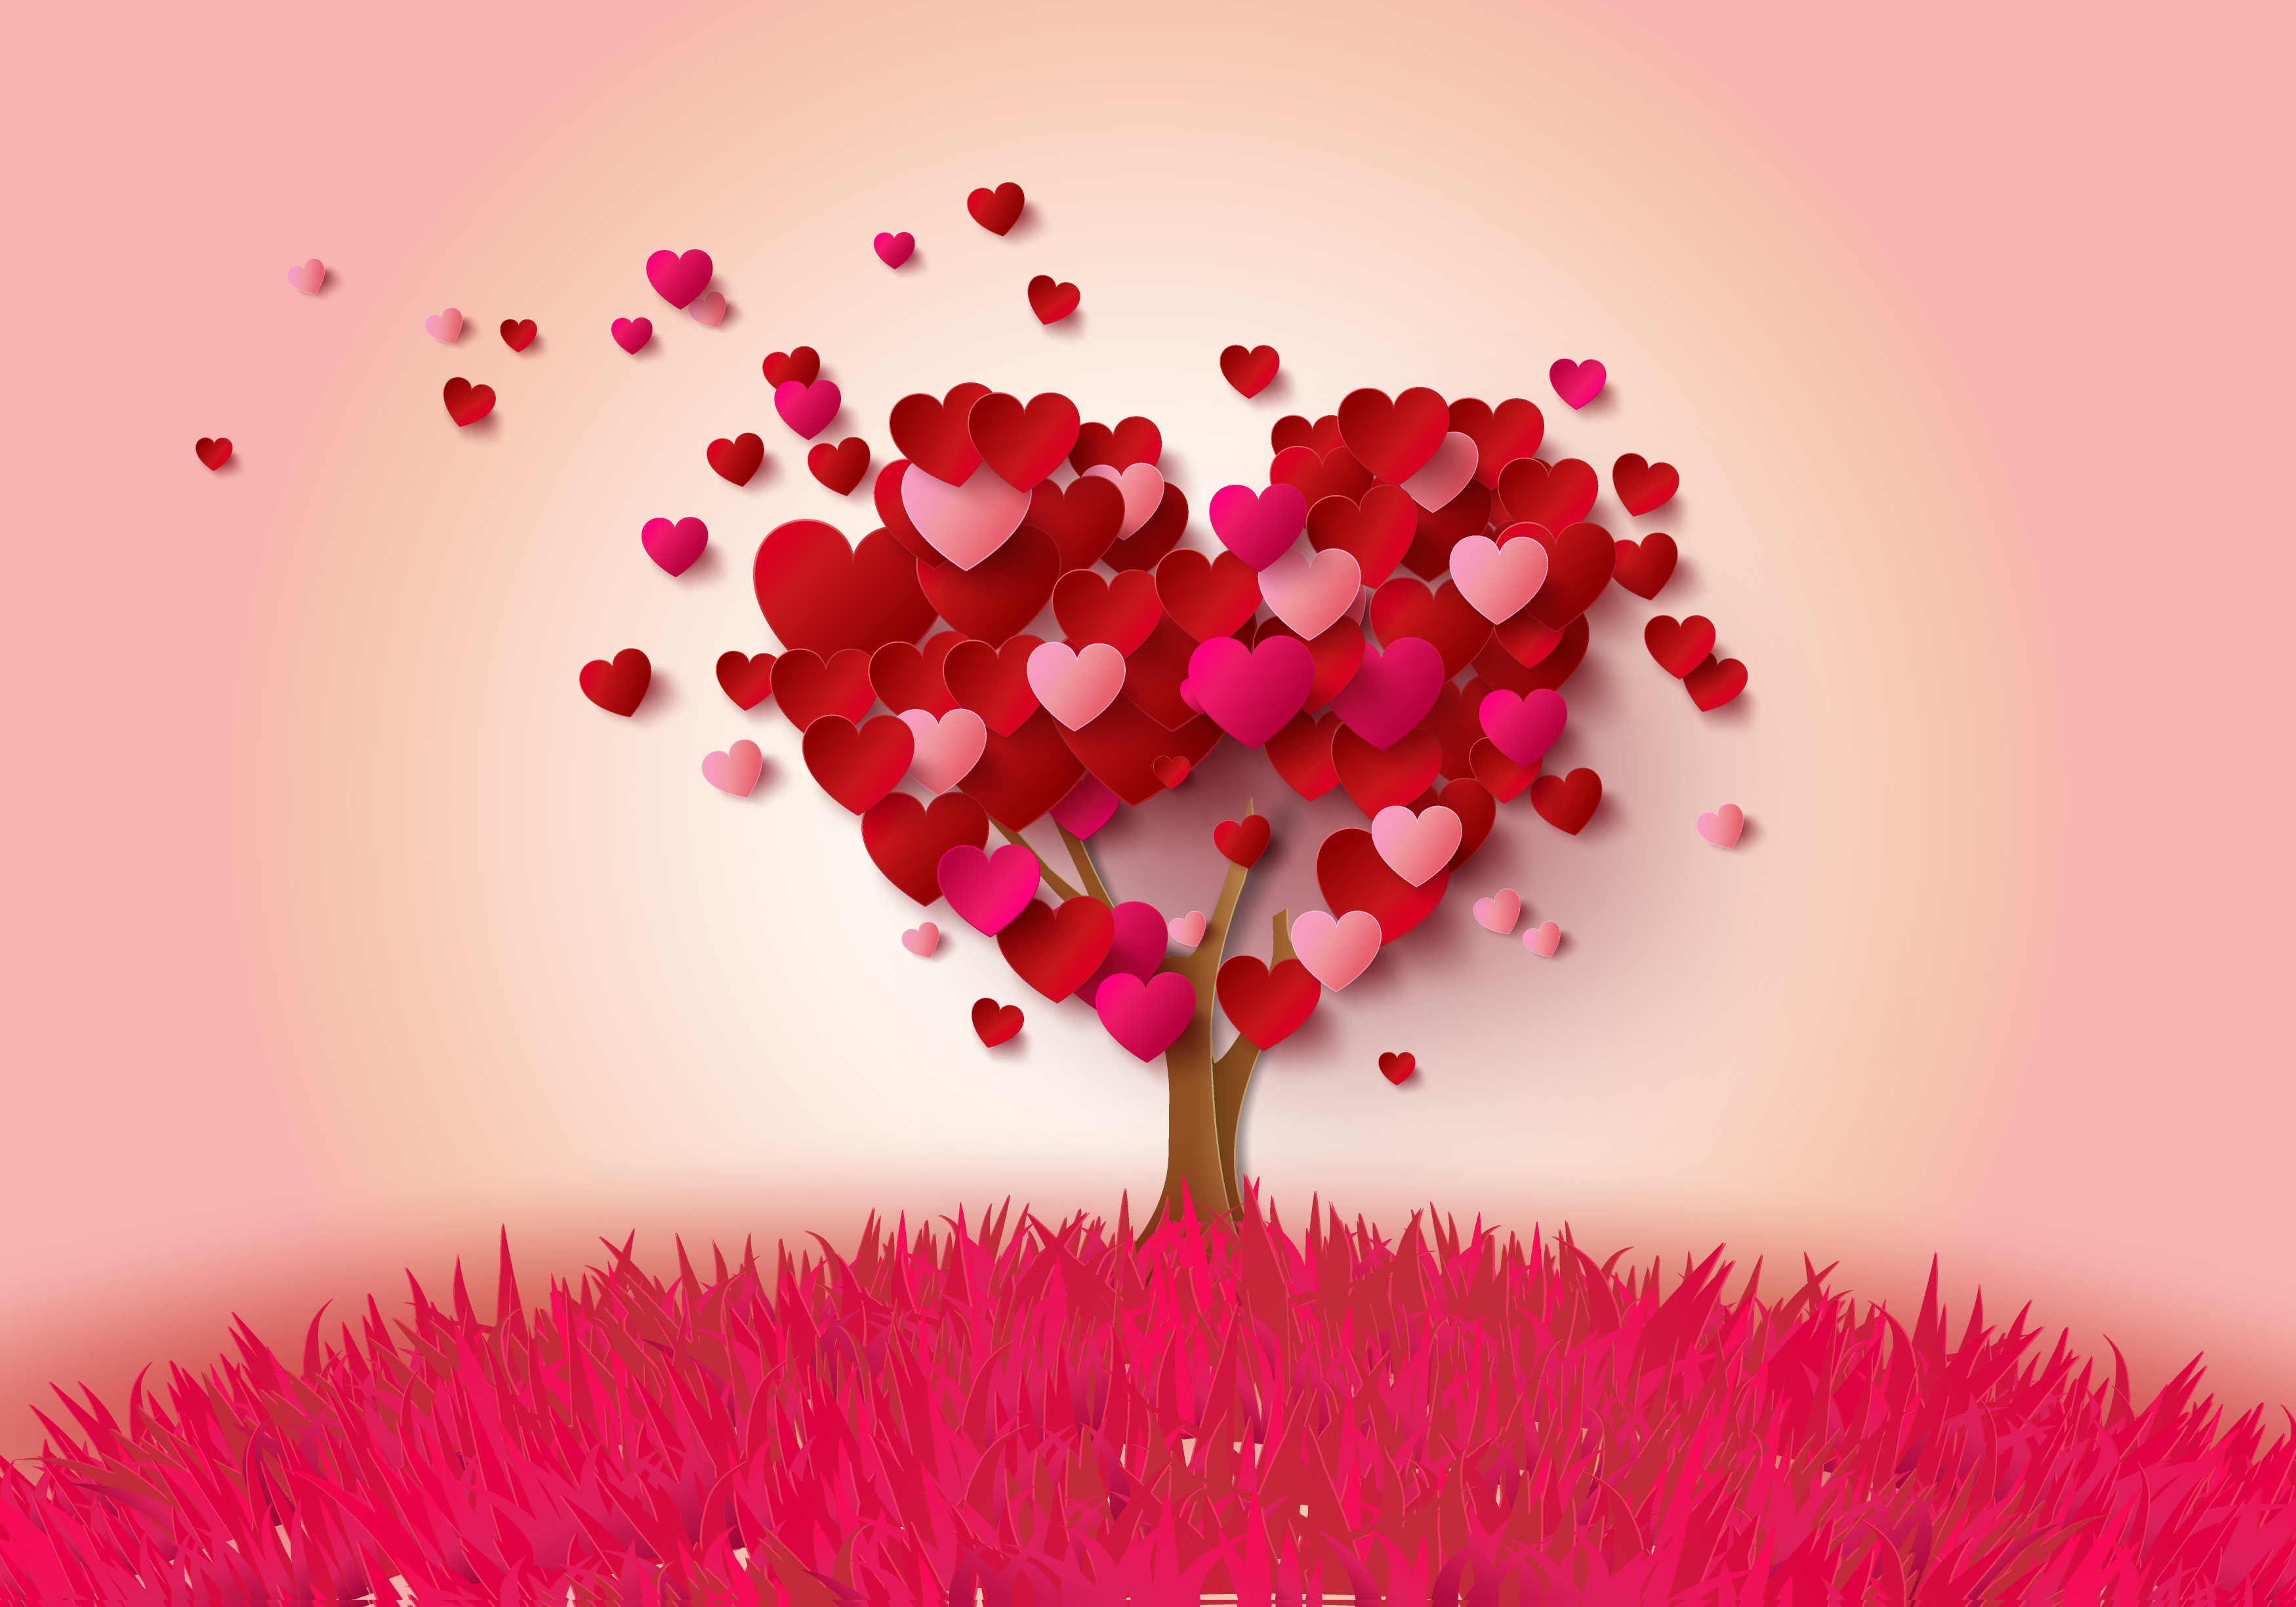 Обои для рабочего стола. дерево, сердце, сердечки, love, heart, pink, roman...